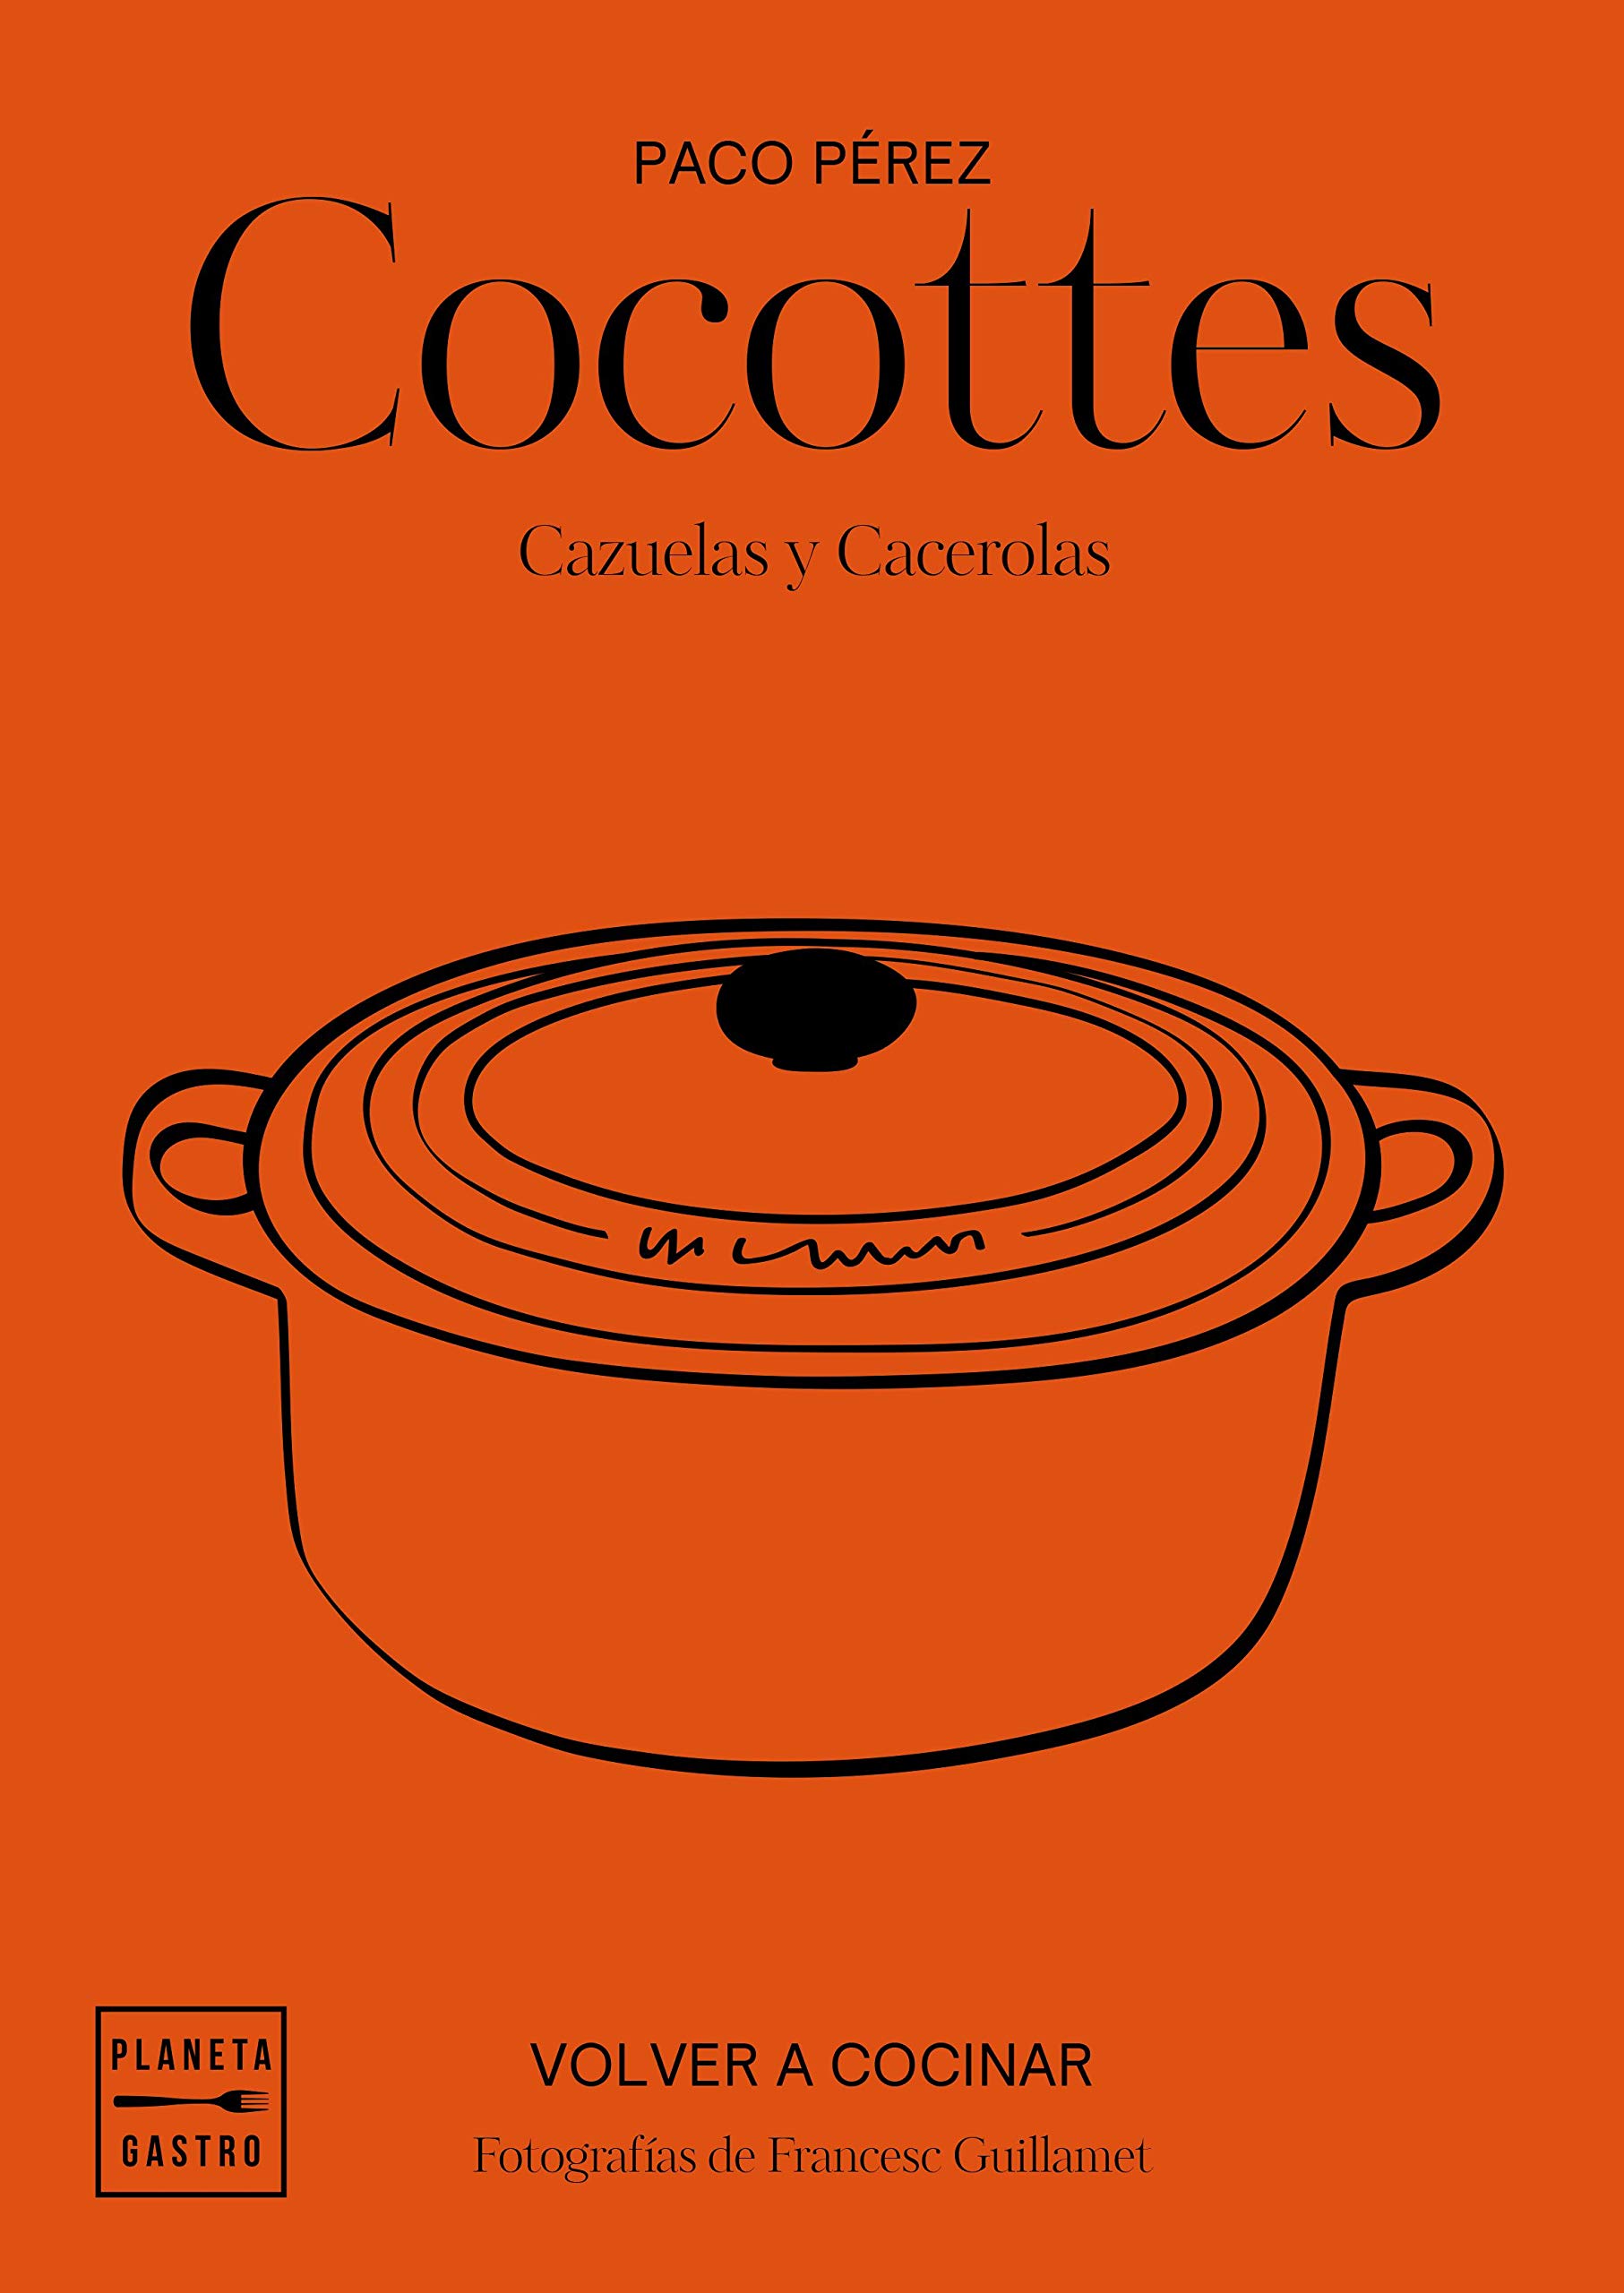 Ollas de hierro fundido o 'cocottes' para cocinar como nuestras abuelas